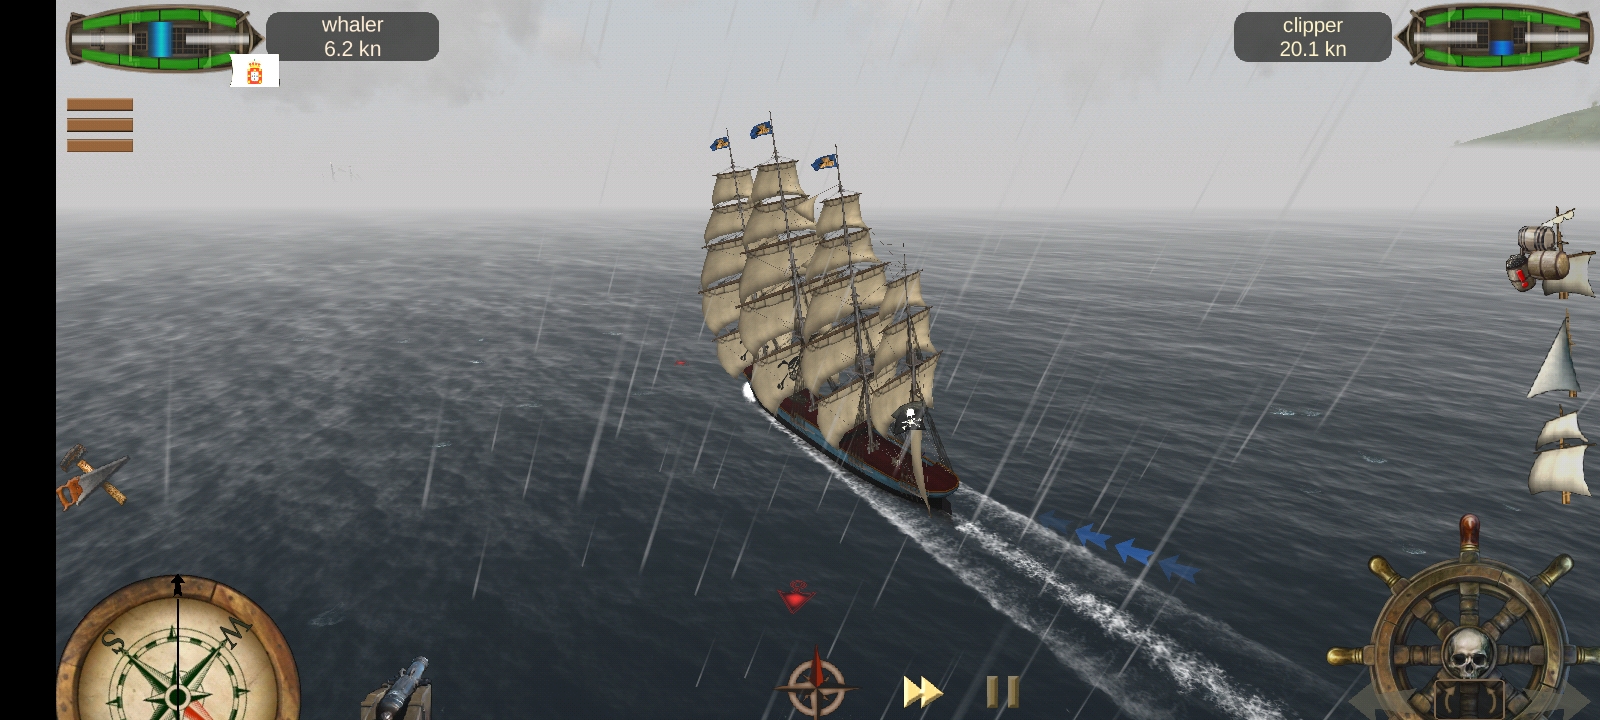 The Pirate: Caribbean Hunt no Steam